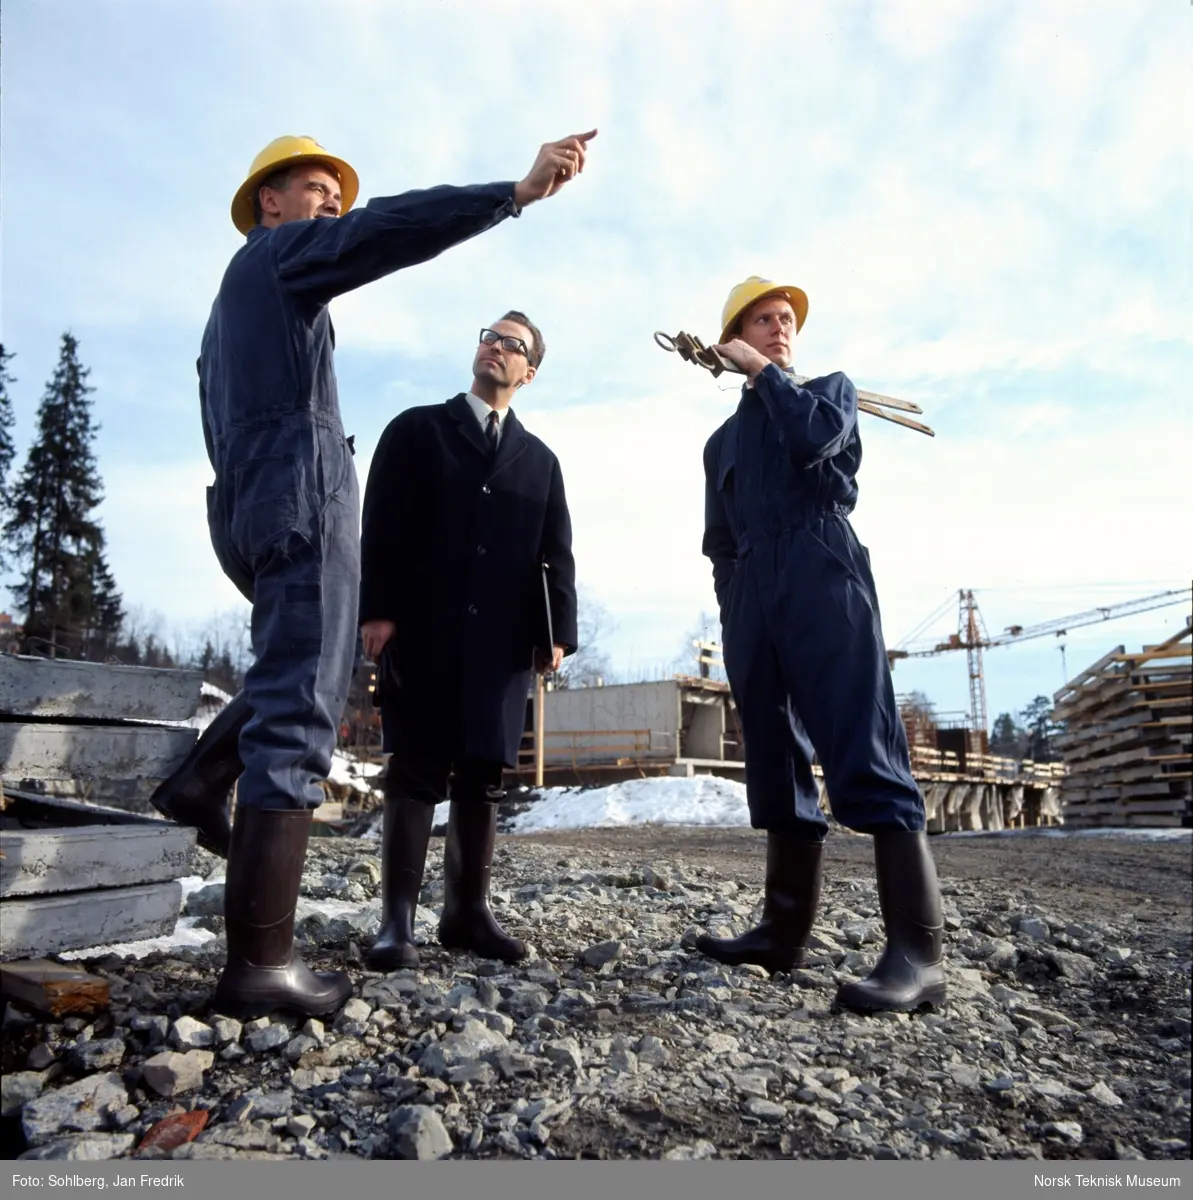 Reklamefotografi for Viking gummistøvler. Tre menn på en byggeplass, to iført kjeledress, hjelm og støvler, den tredje iført frakk og støvler.